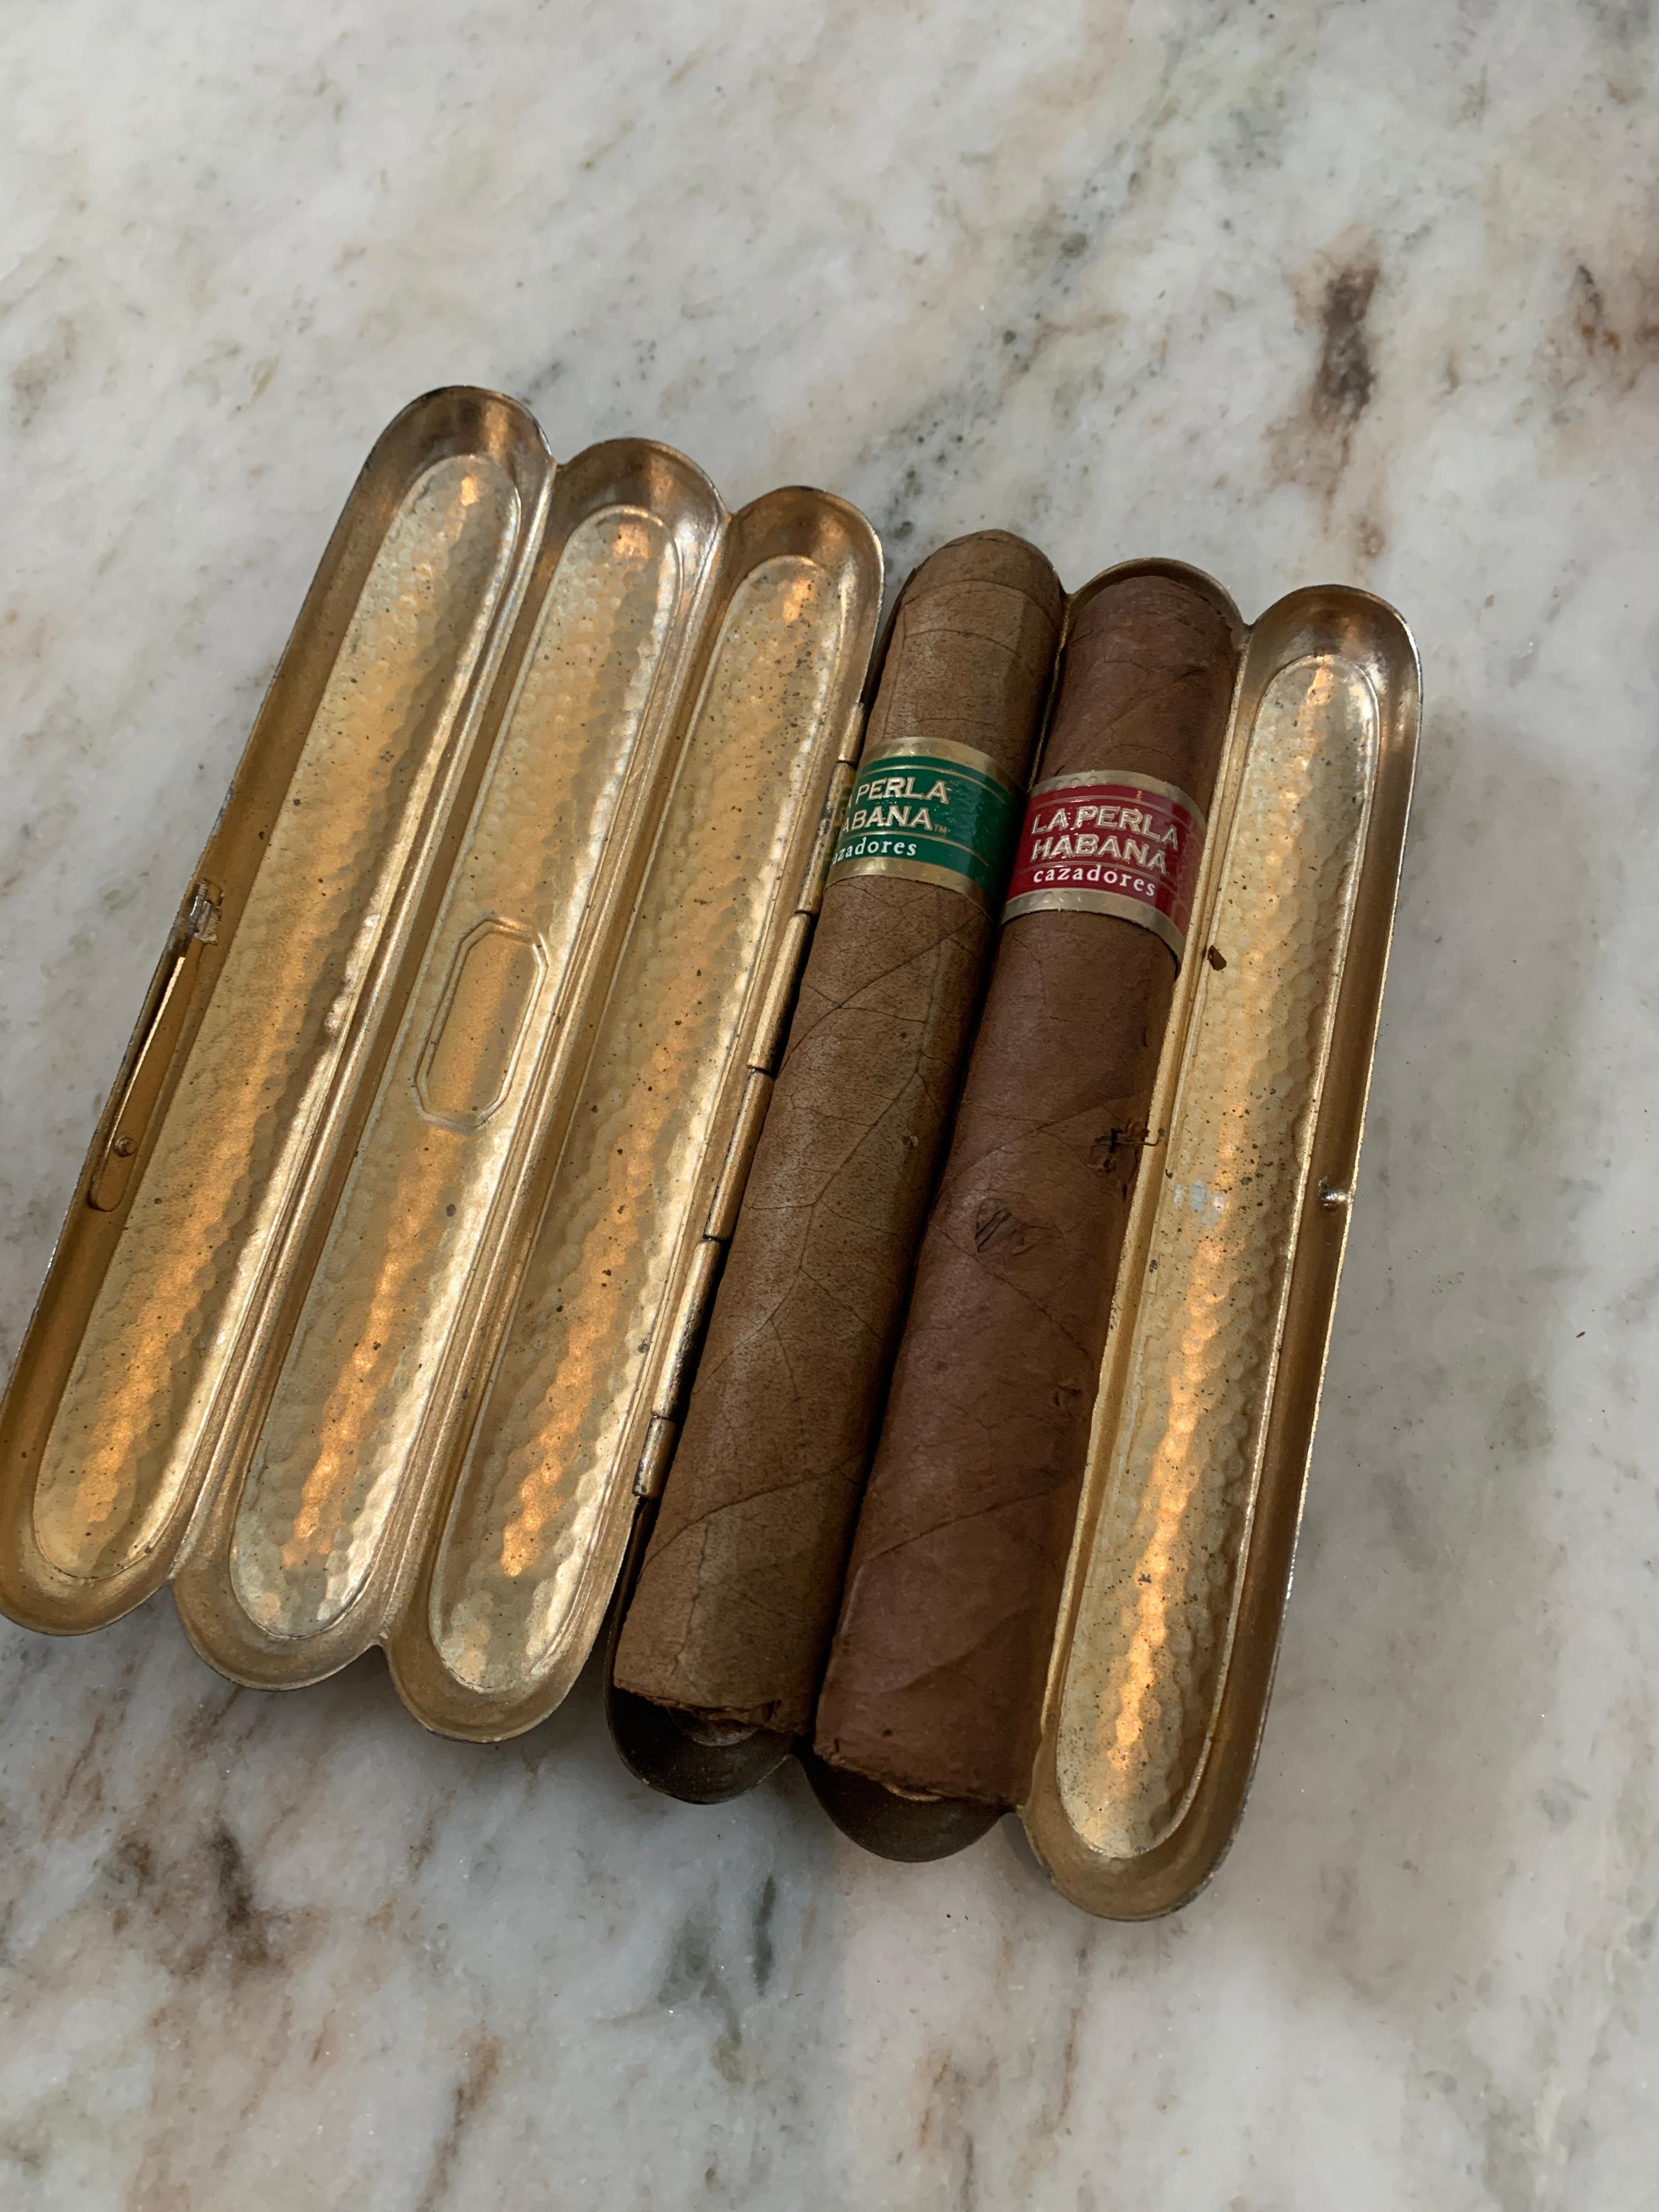 Ein wunderbares Etui für drei Zigarren Ihrer Wahl... kubanisch, handgerollt... was immer Sie wollen.

Das Blechetui ist der perfekte Ort, um drei Stück für das Spiel, den Tanz oder das lange Wochenende zu verstauen. 
Das Teil ist verschließbar,